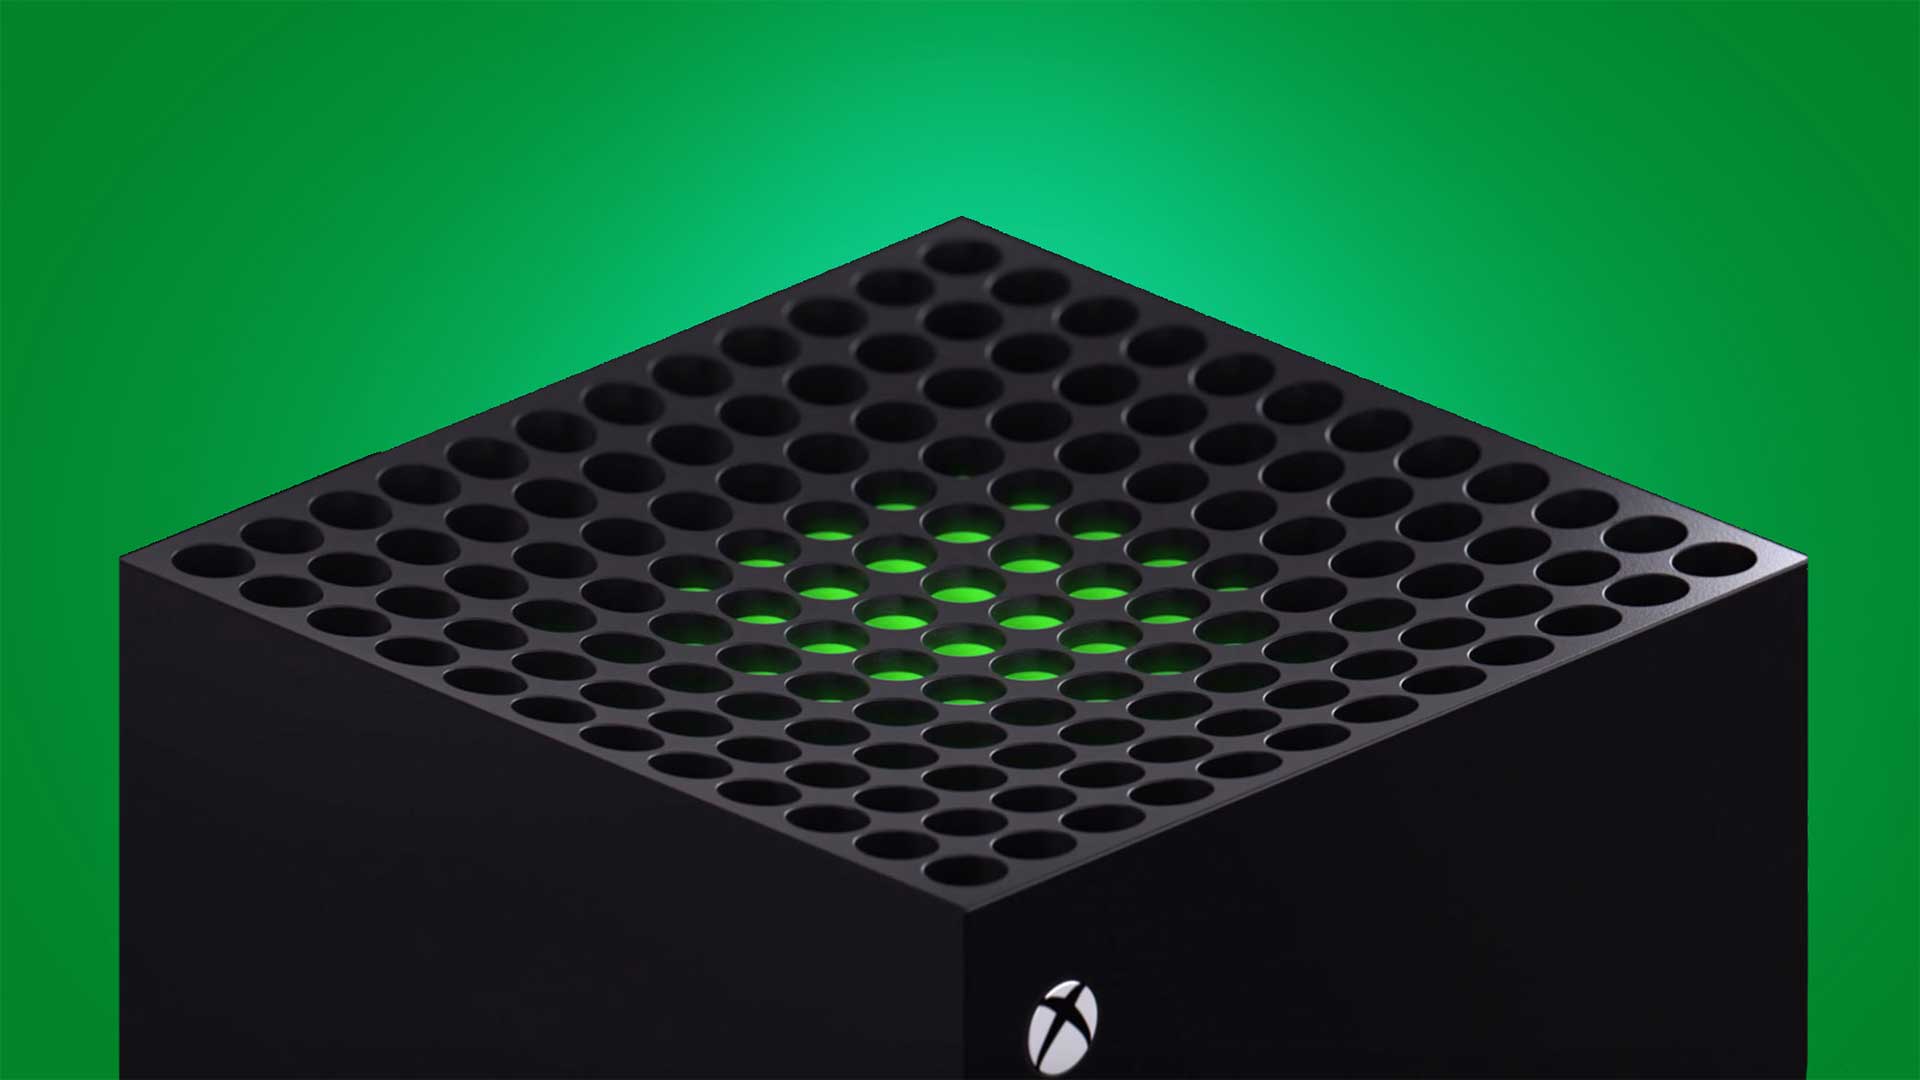  عکس  های جدید لو رفته از Xbox Series X سخت افزار آن را به نمایش می گذارند